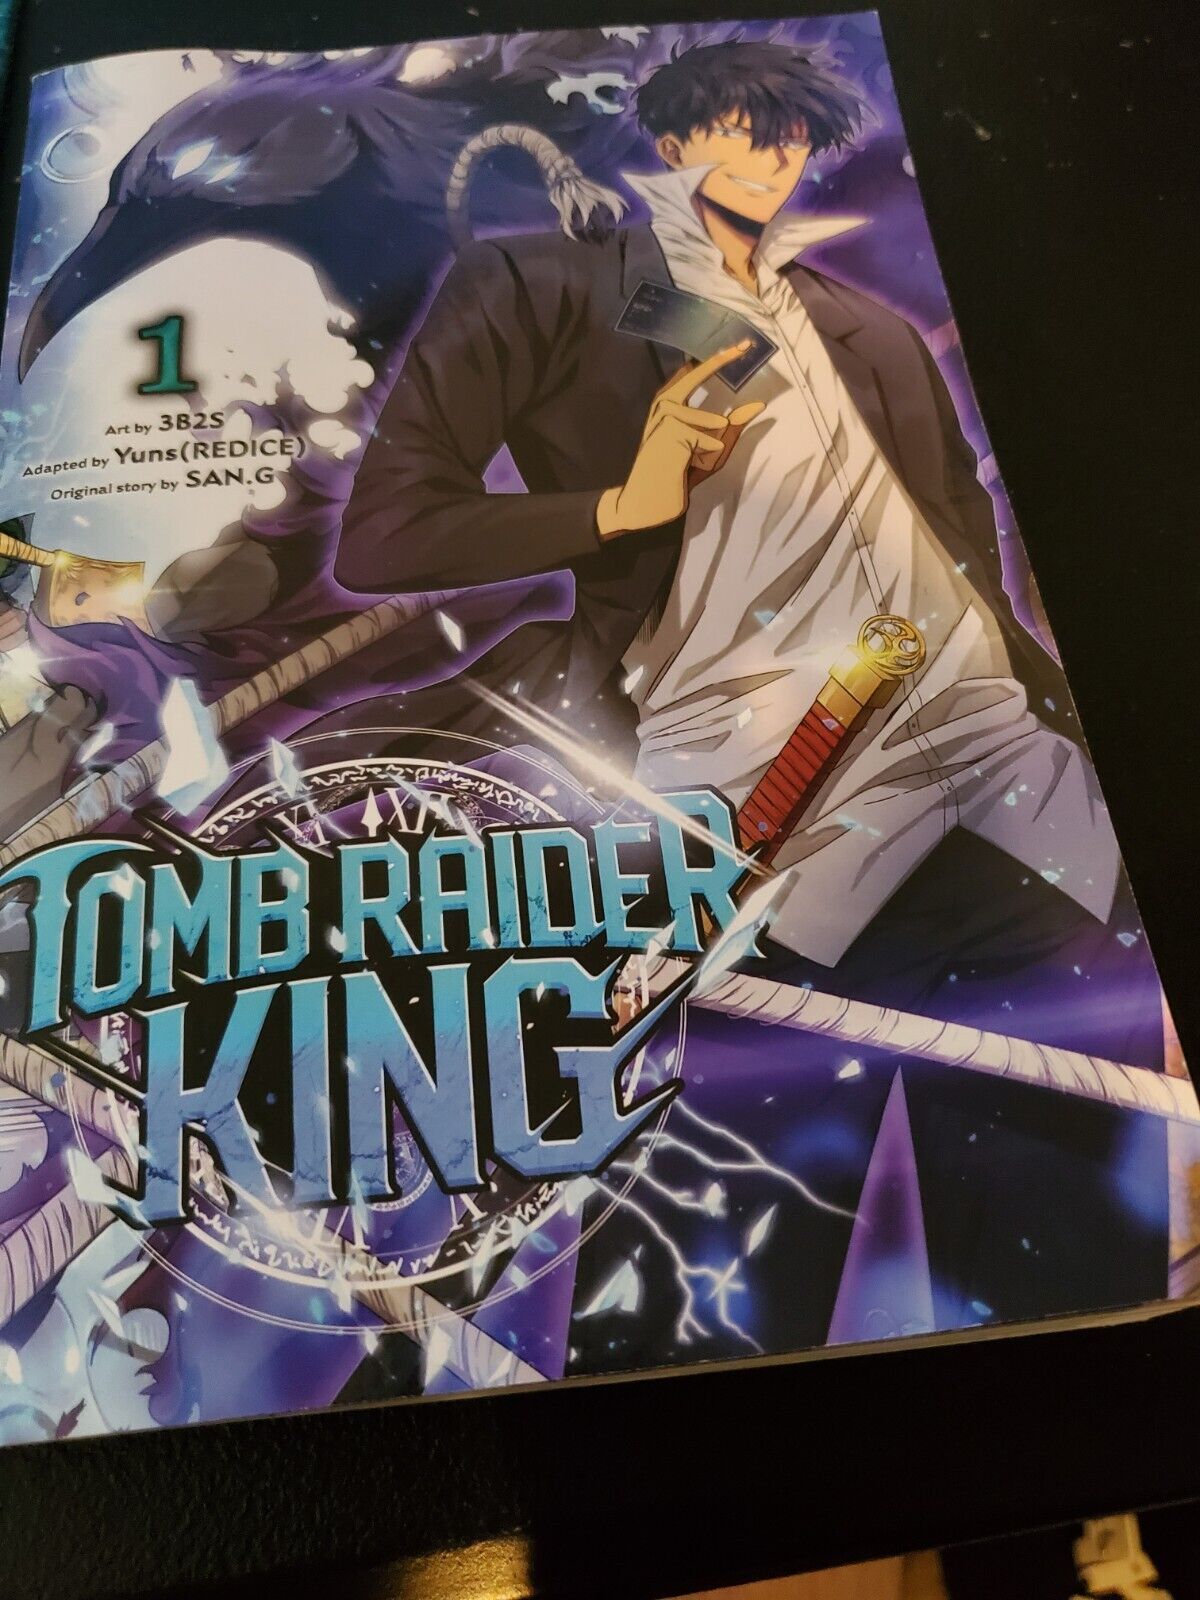 Tomb Raider King manga volume 1 english language